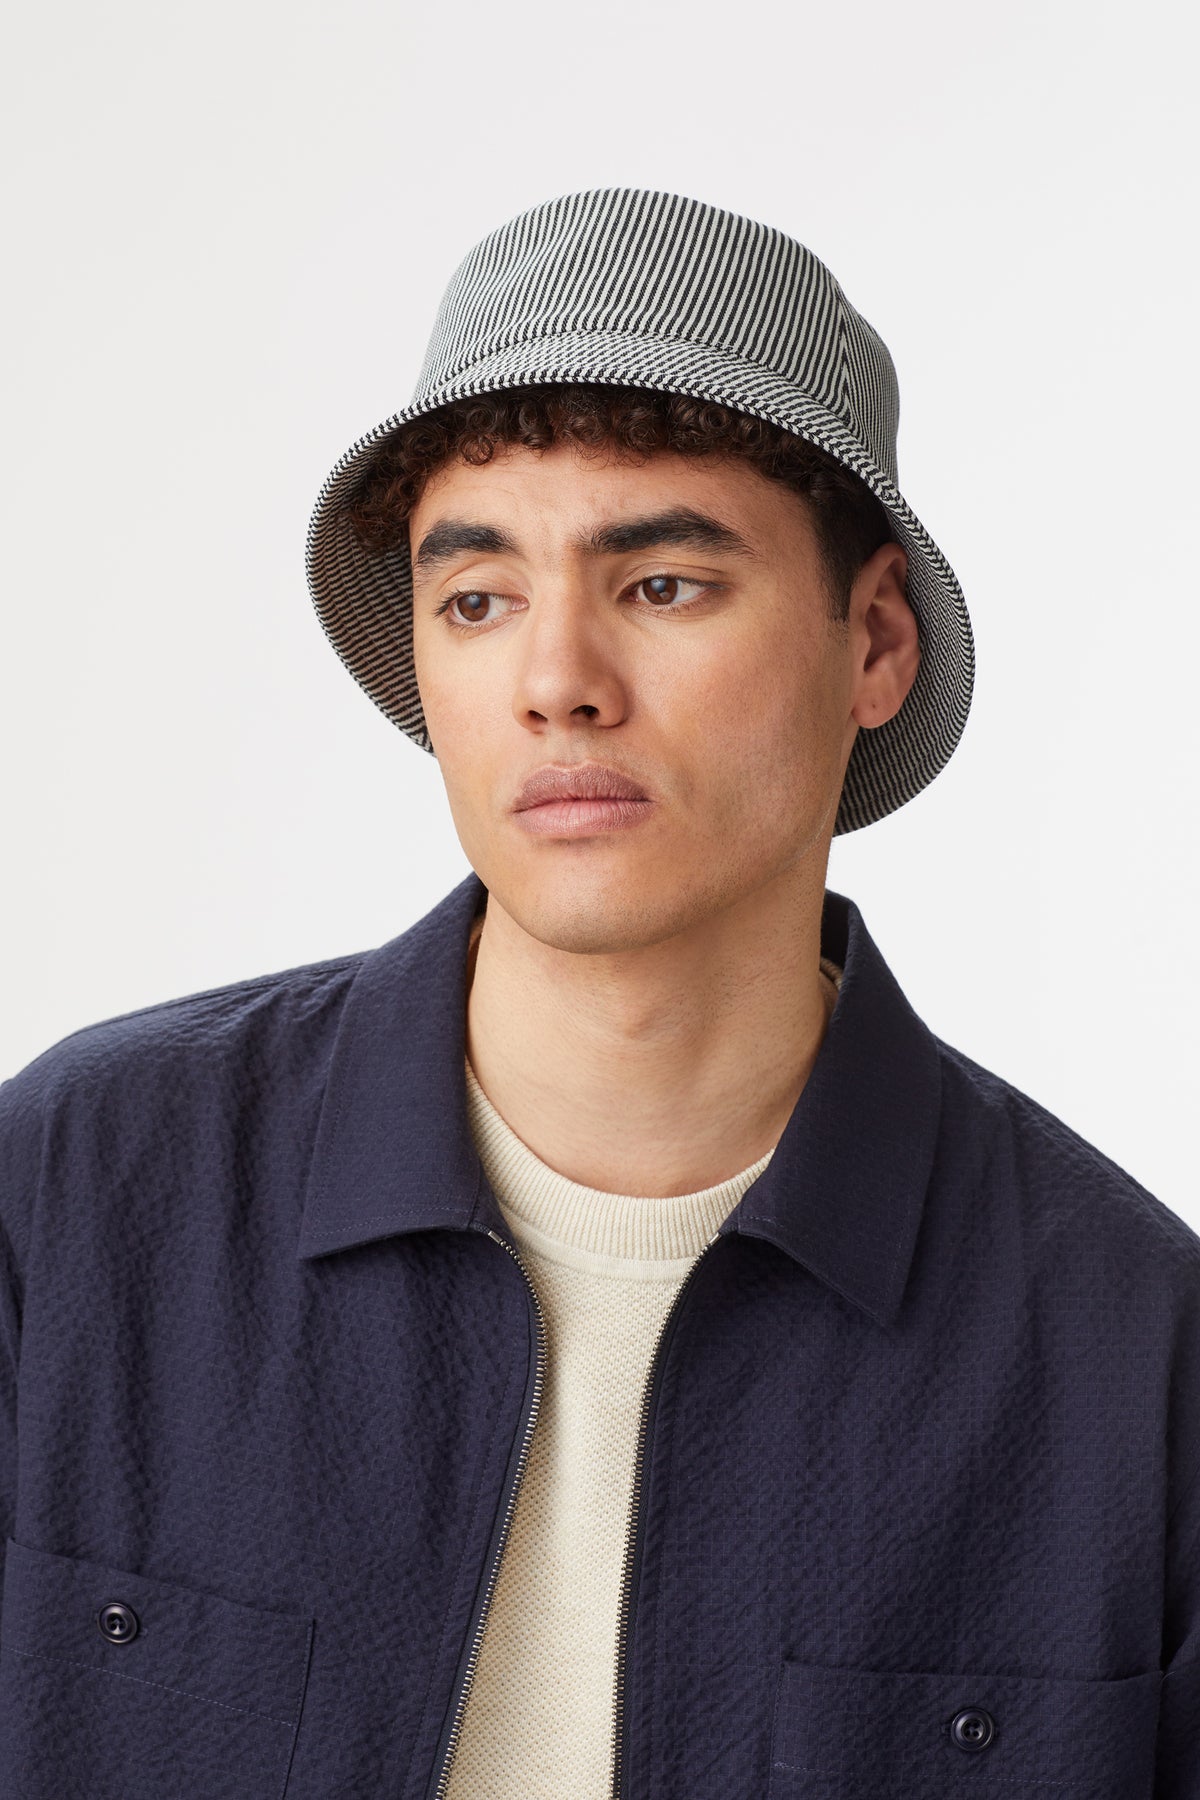 Rye Striped Bucket Hat - Lock & Co. Hats for Men & Women